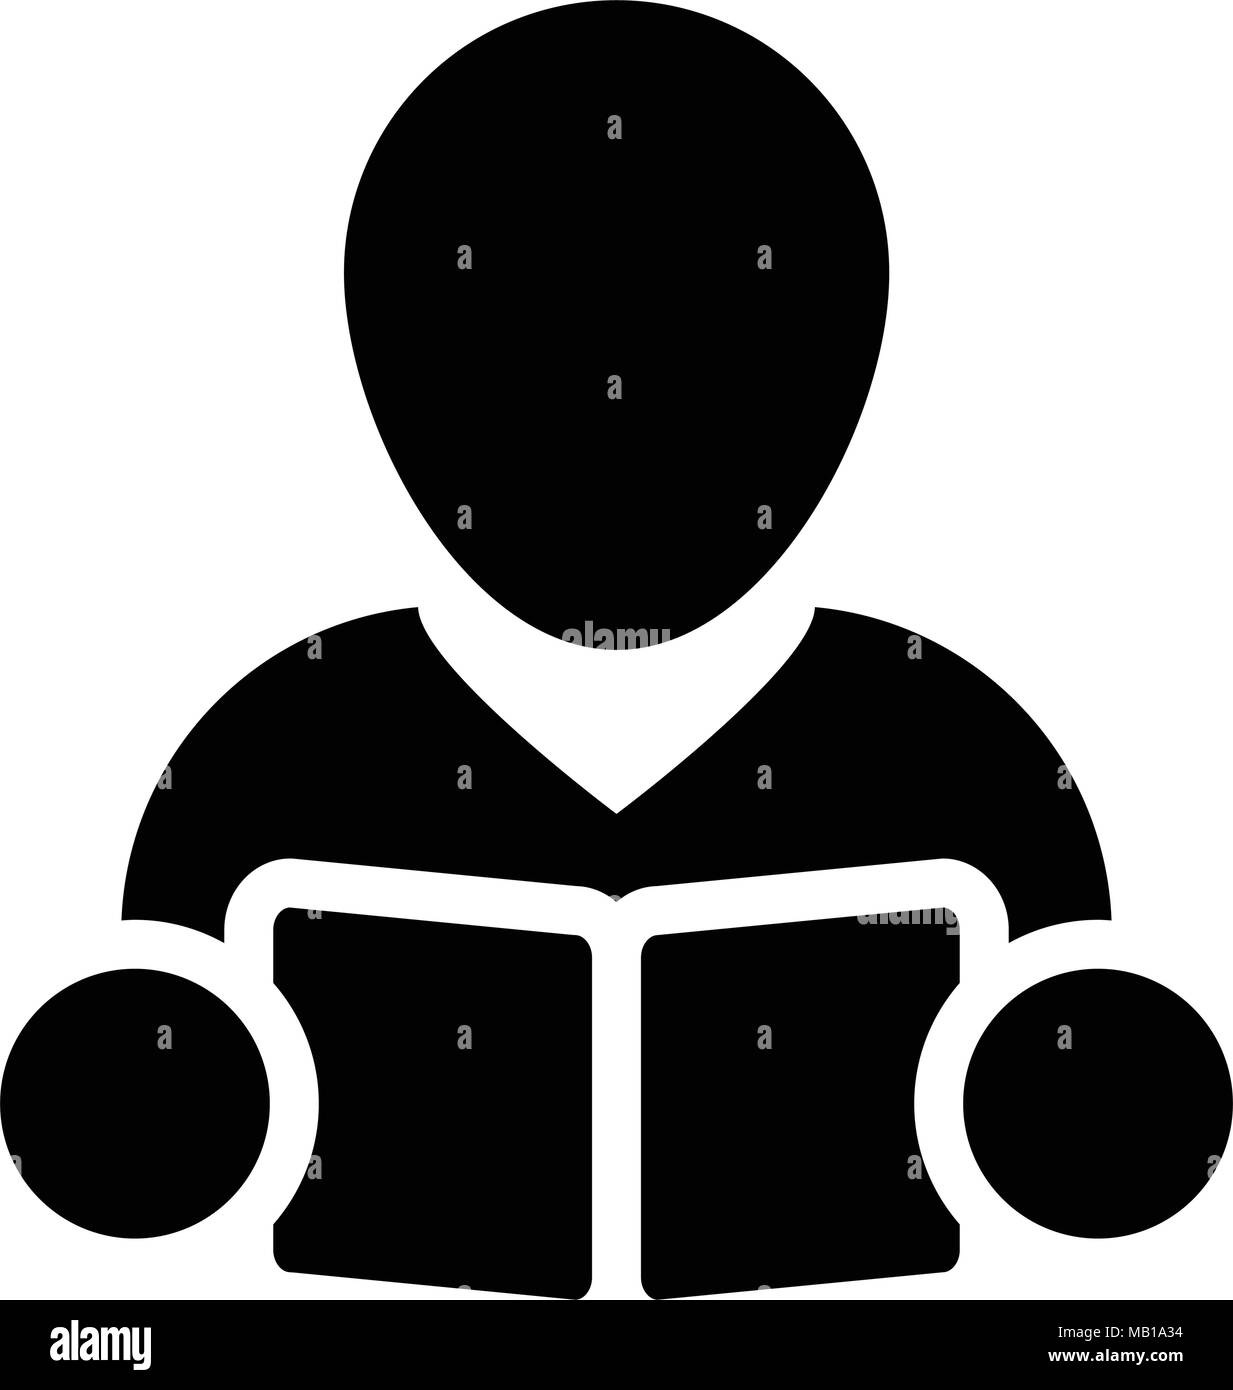 Buchen Sie Symbol Vektor mit männlichen Kursteilnehmer oder Lehrer Person Profil Avatar für Schule, Hochschule und Universität Bildung in Glyph Piktogramm Abbildung Stock Vektor